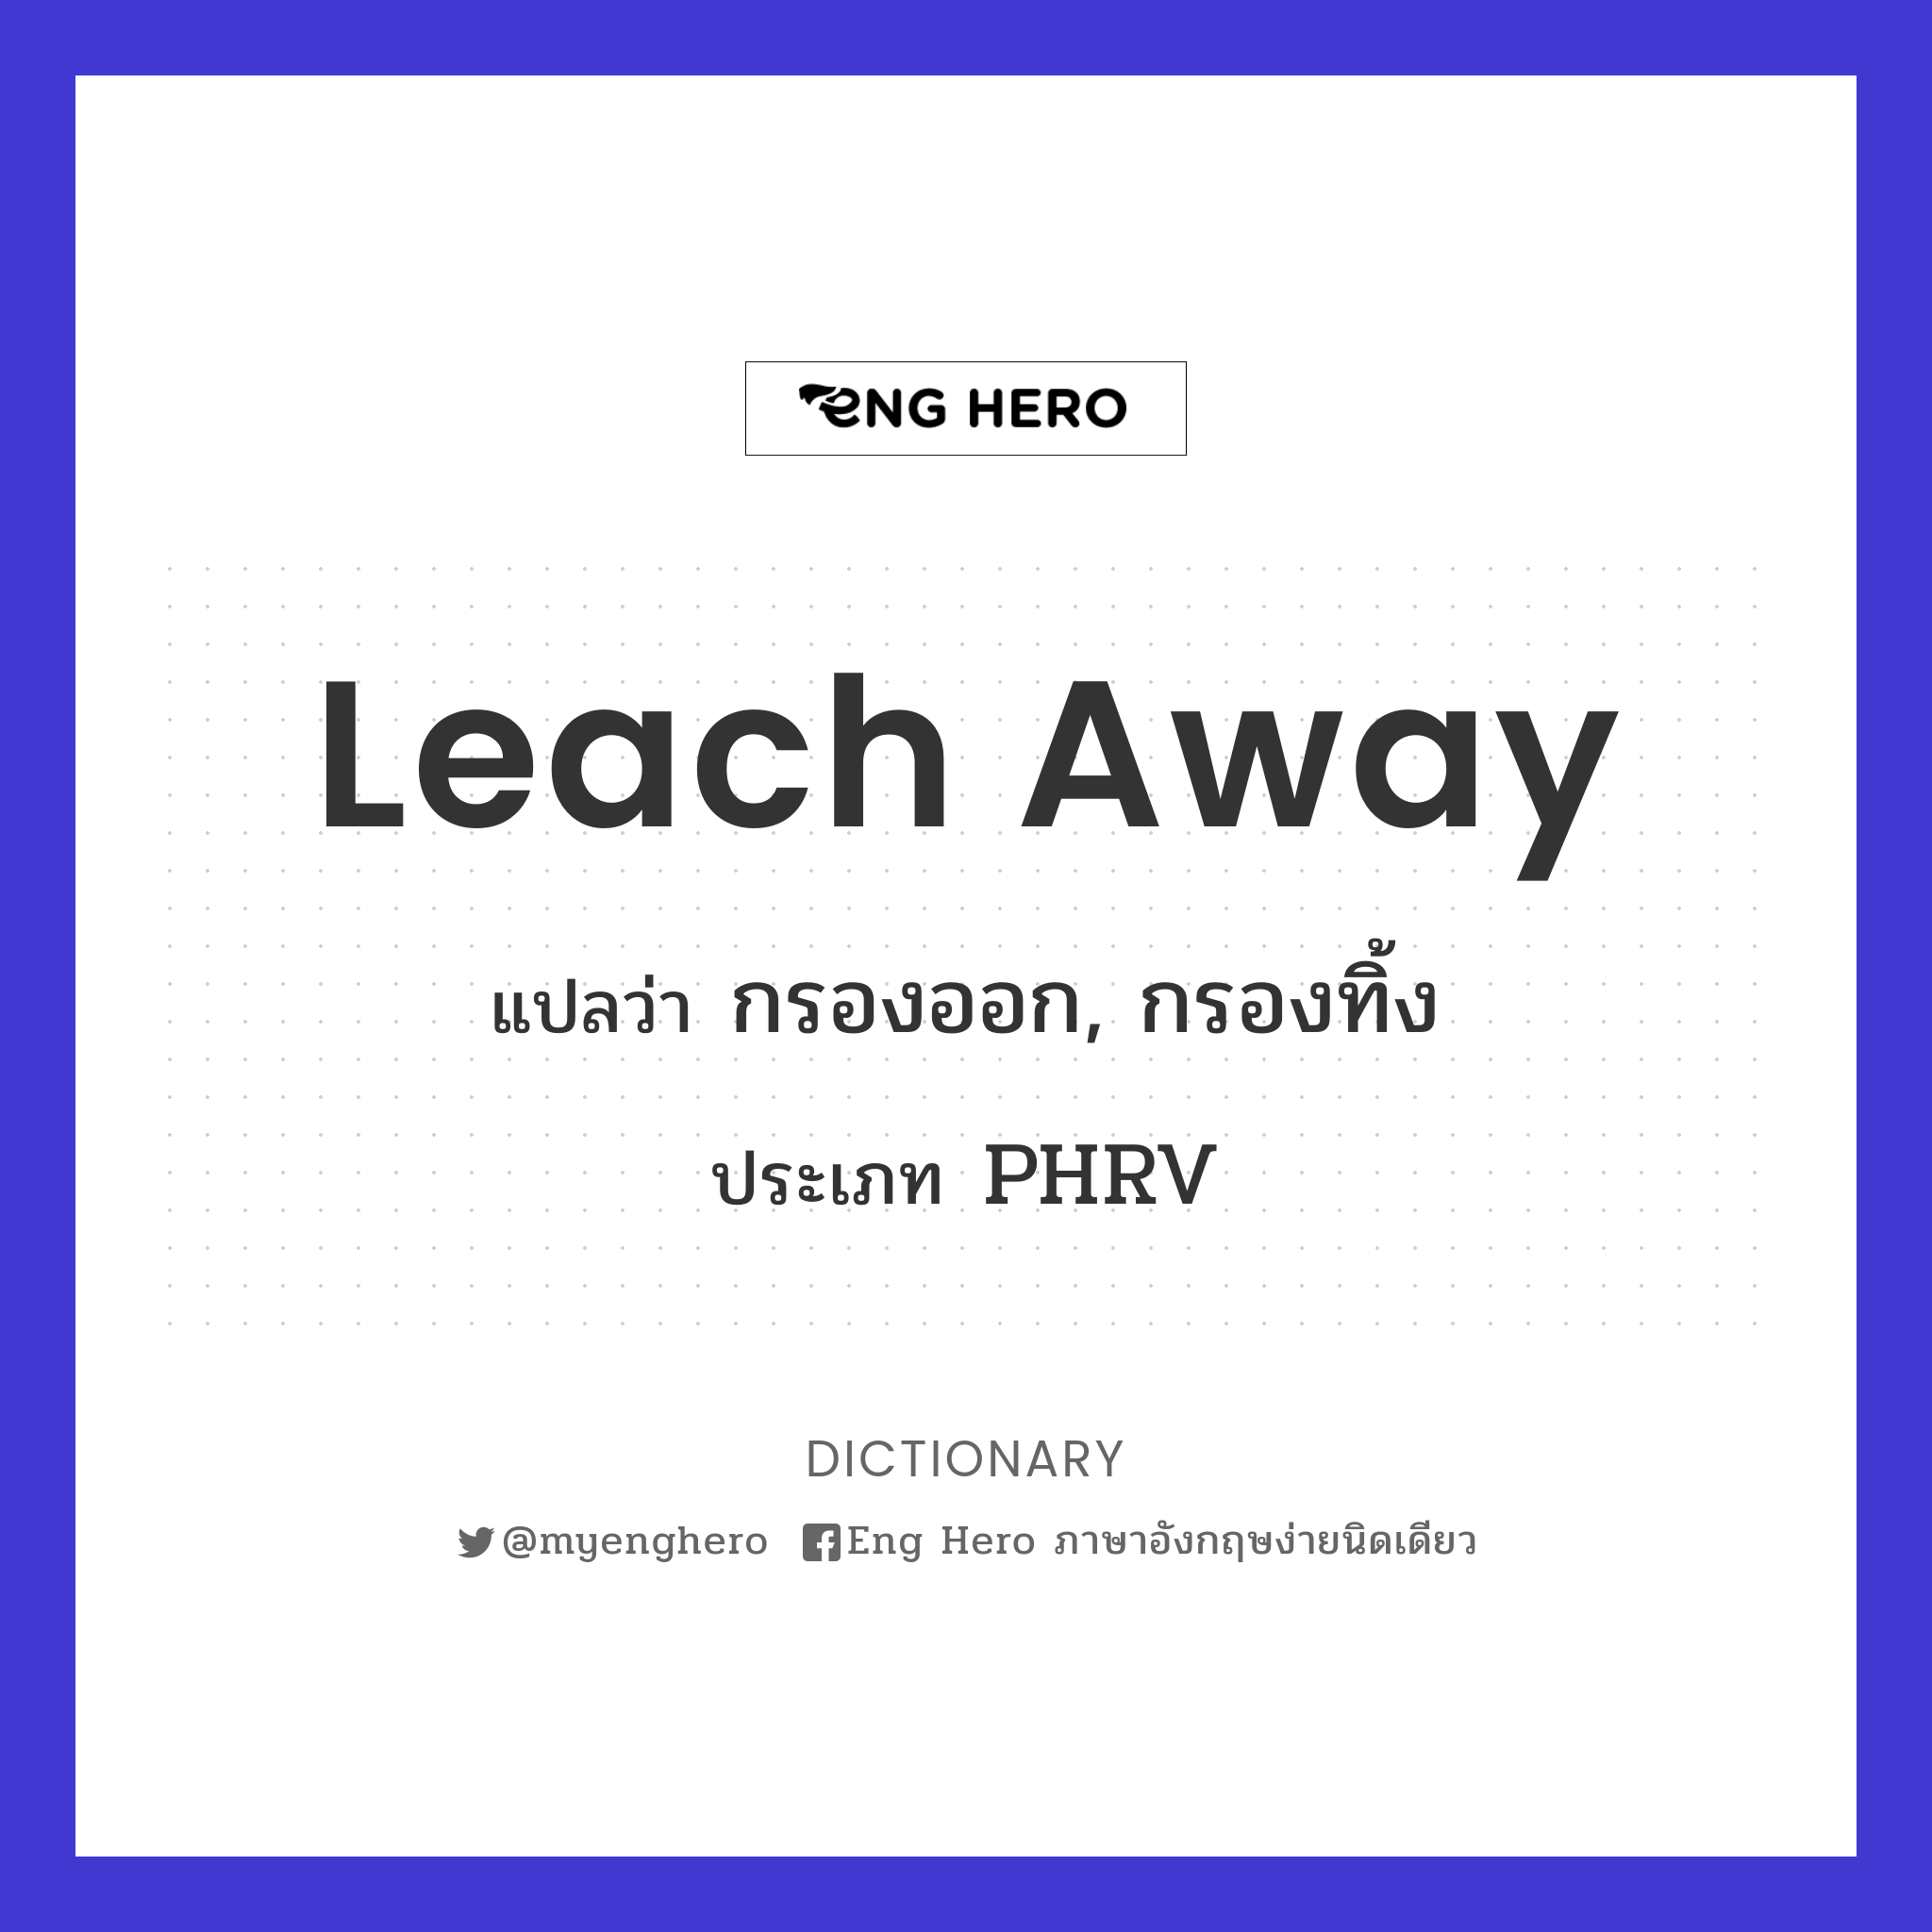 leach away